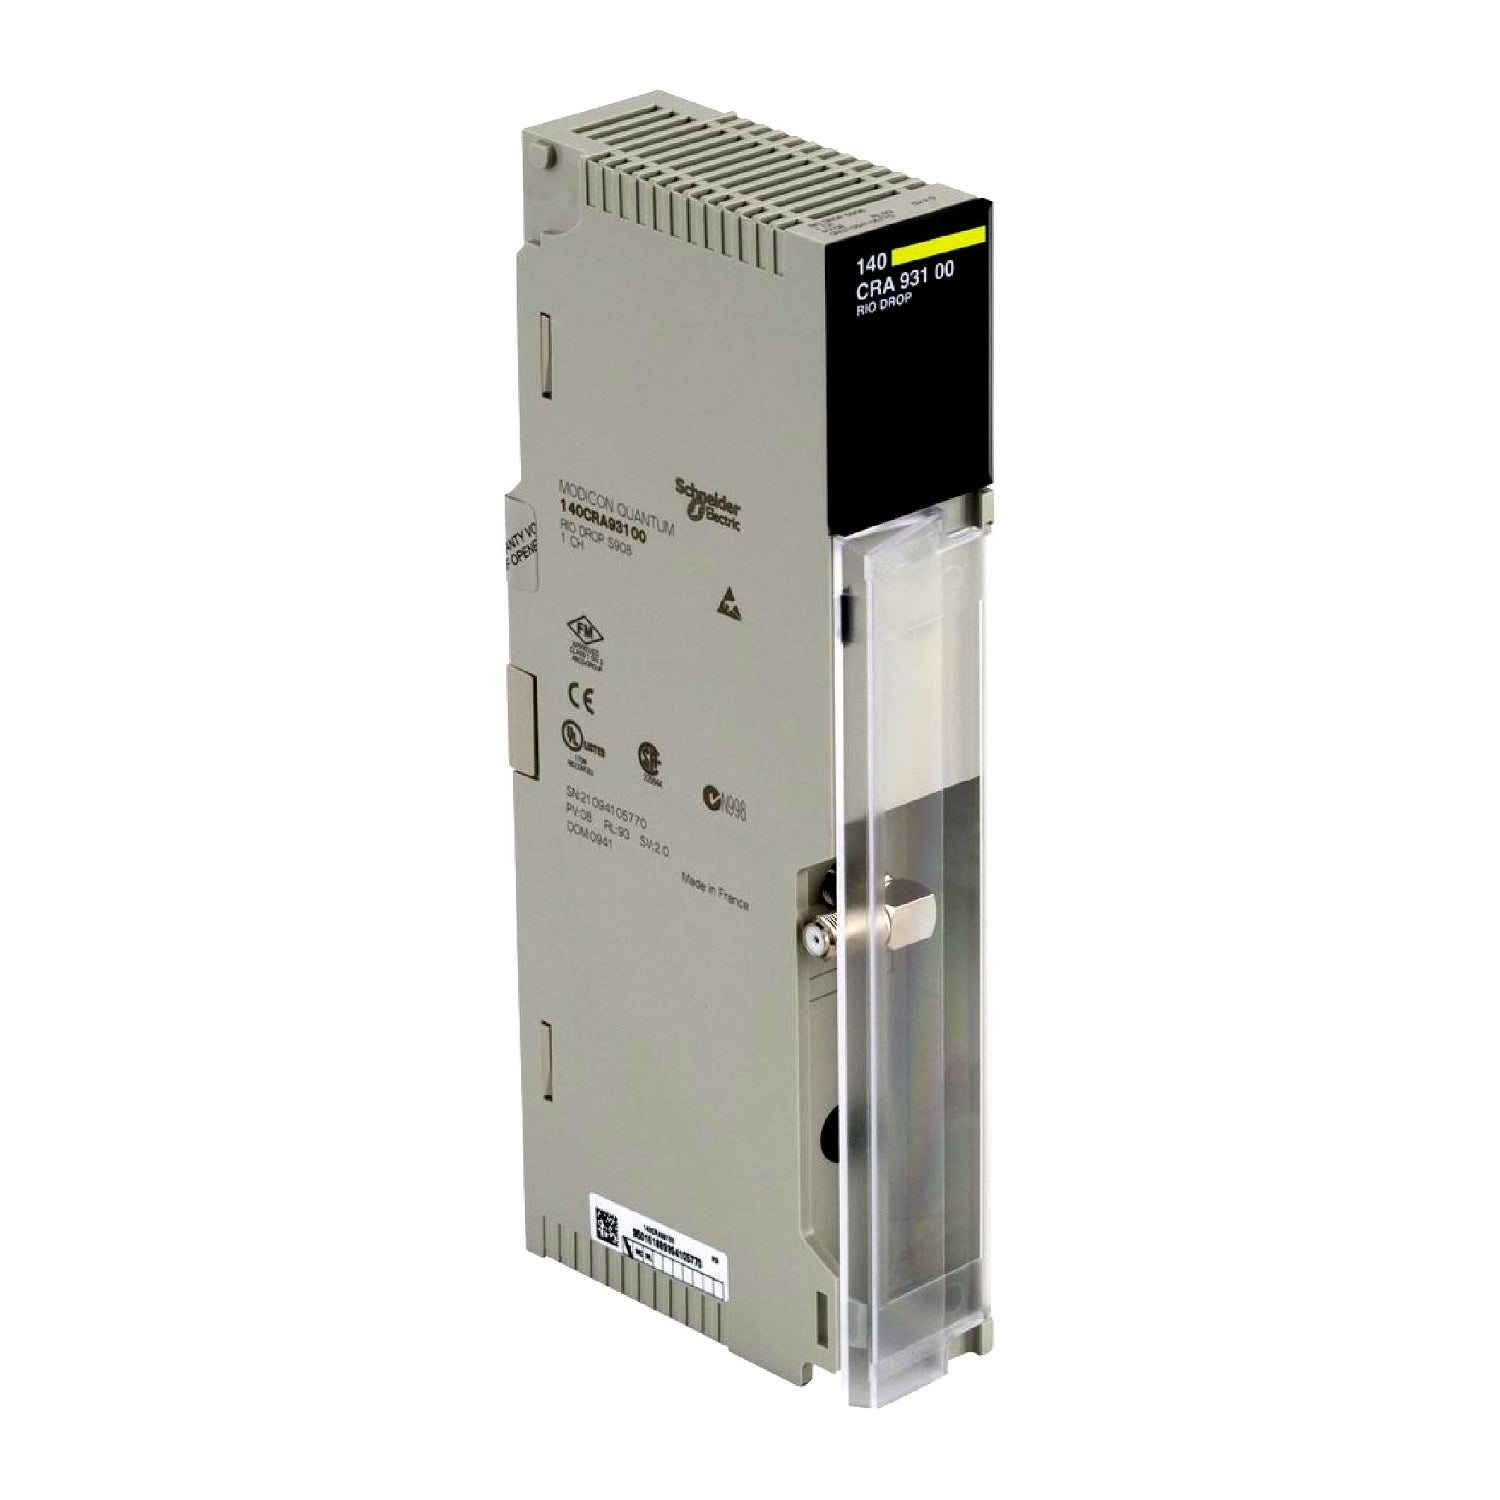 140CRA93100 | Schneider Electric RIO drop adaptor module